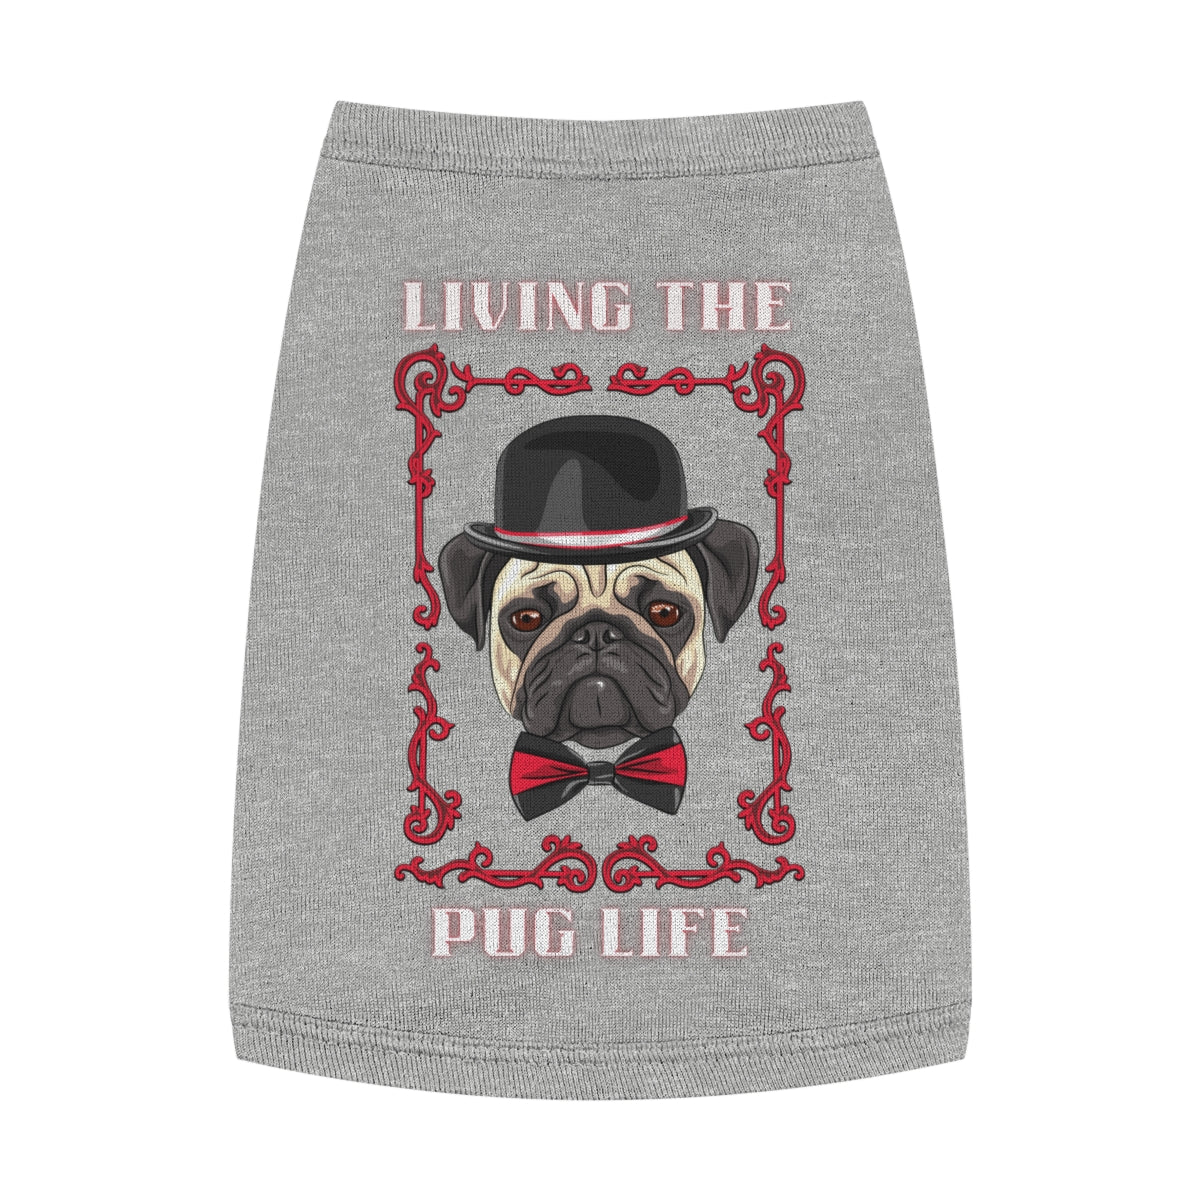 Living the Pug Life Tank Top